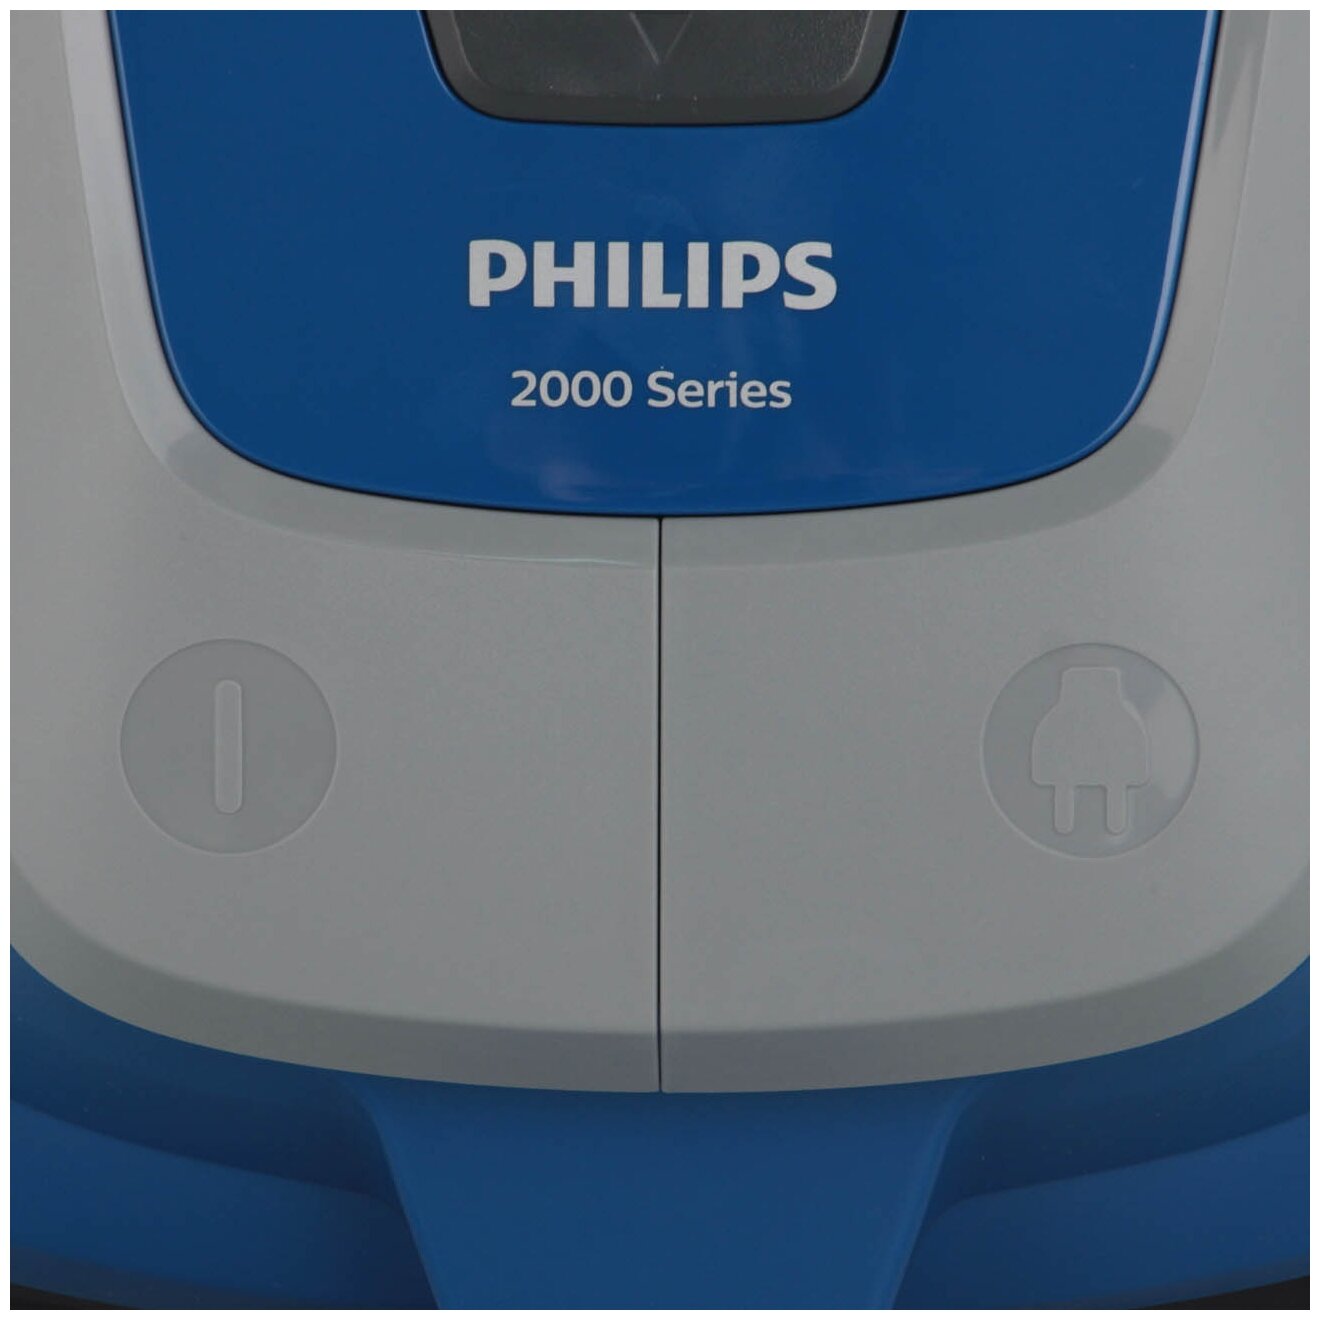 Пылесос филипс 2000 series